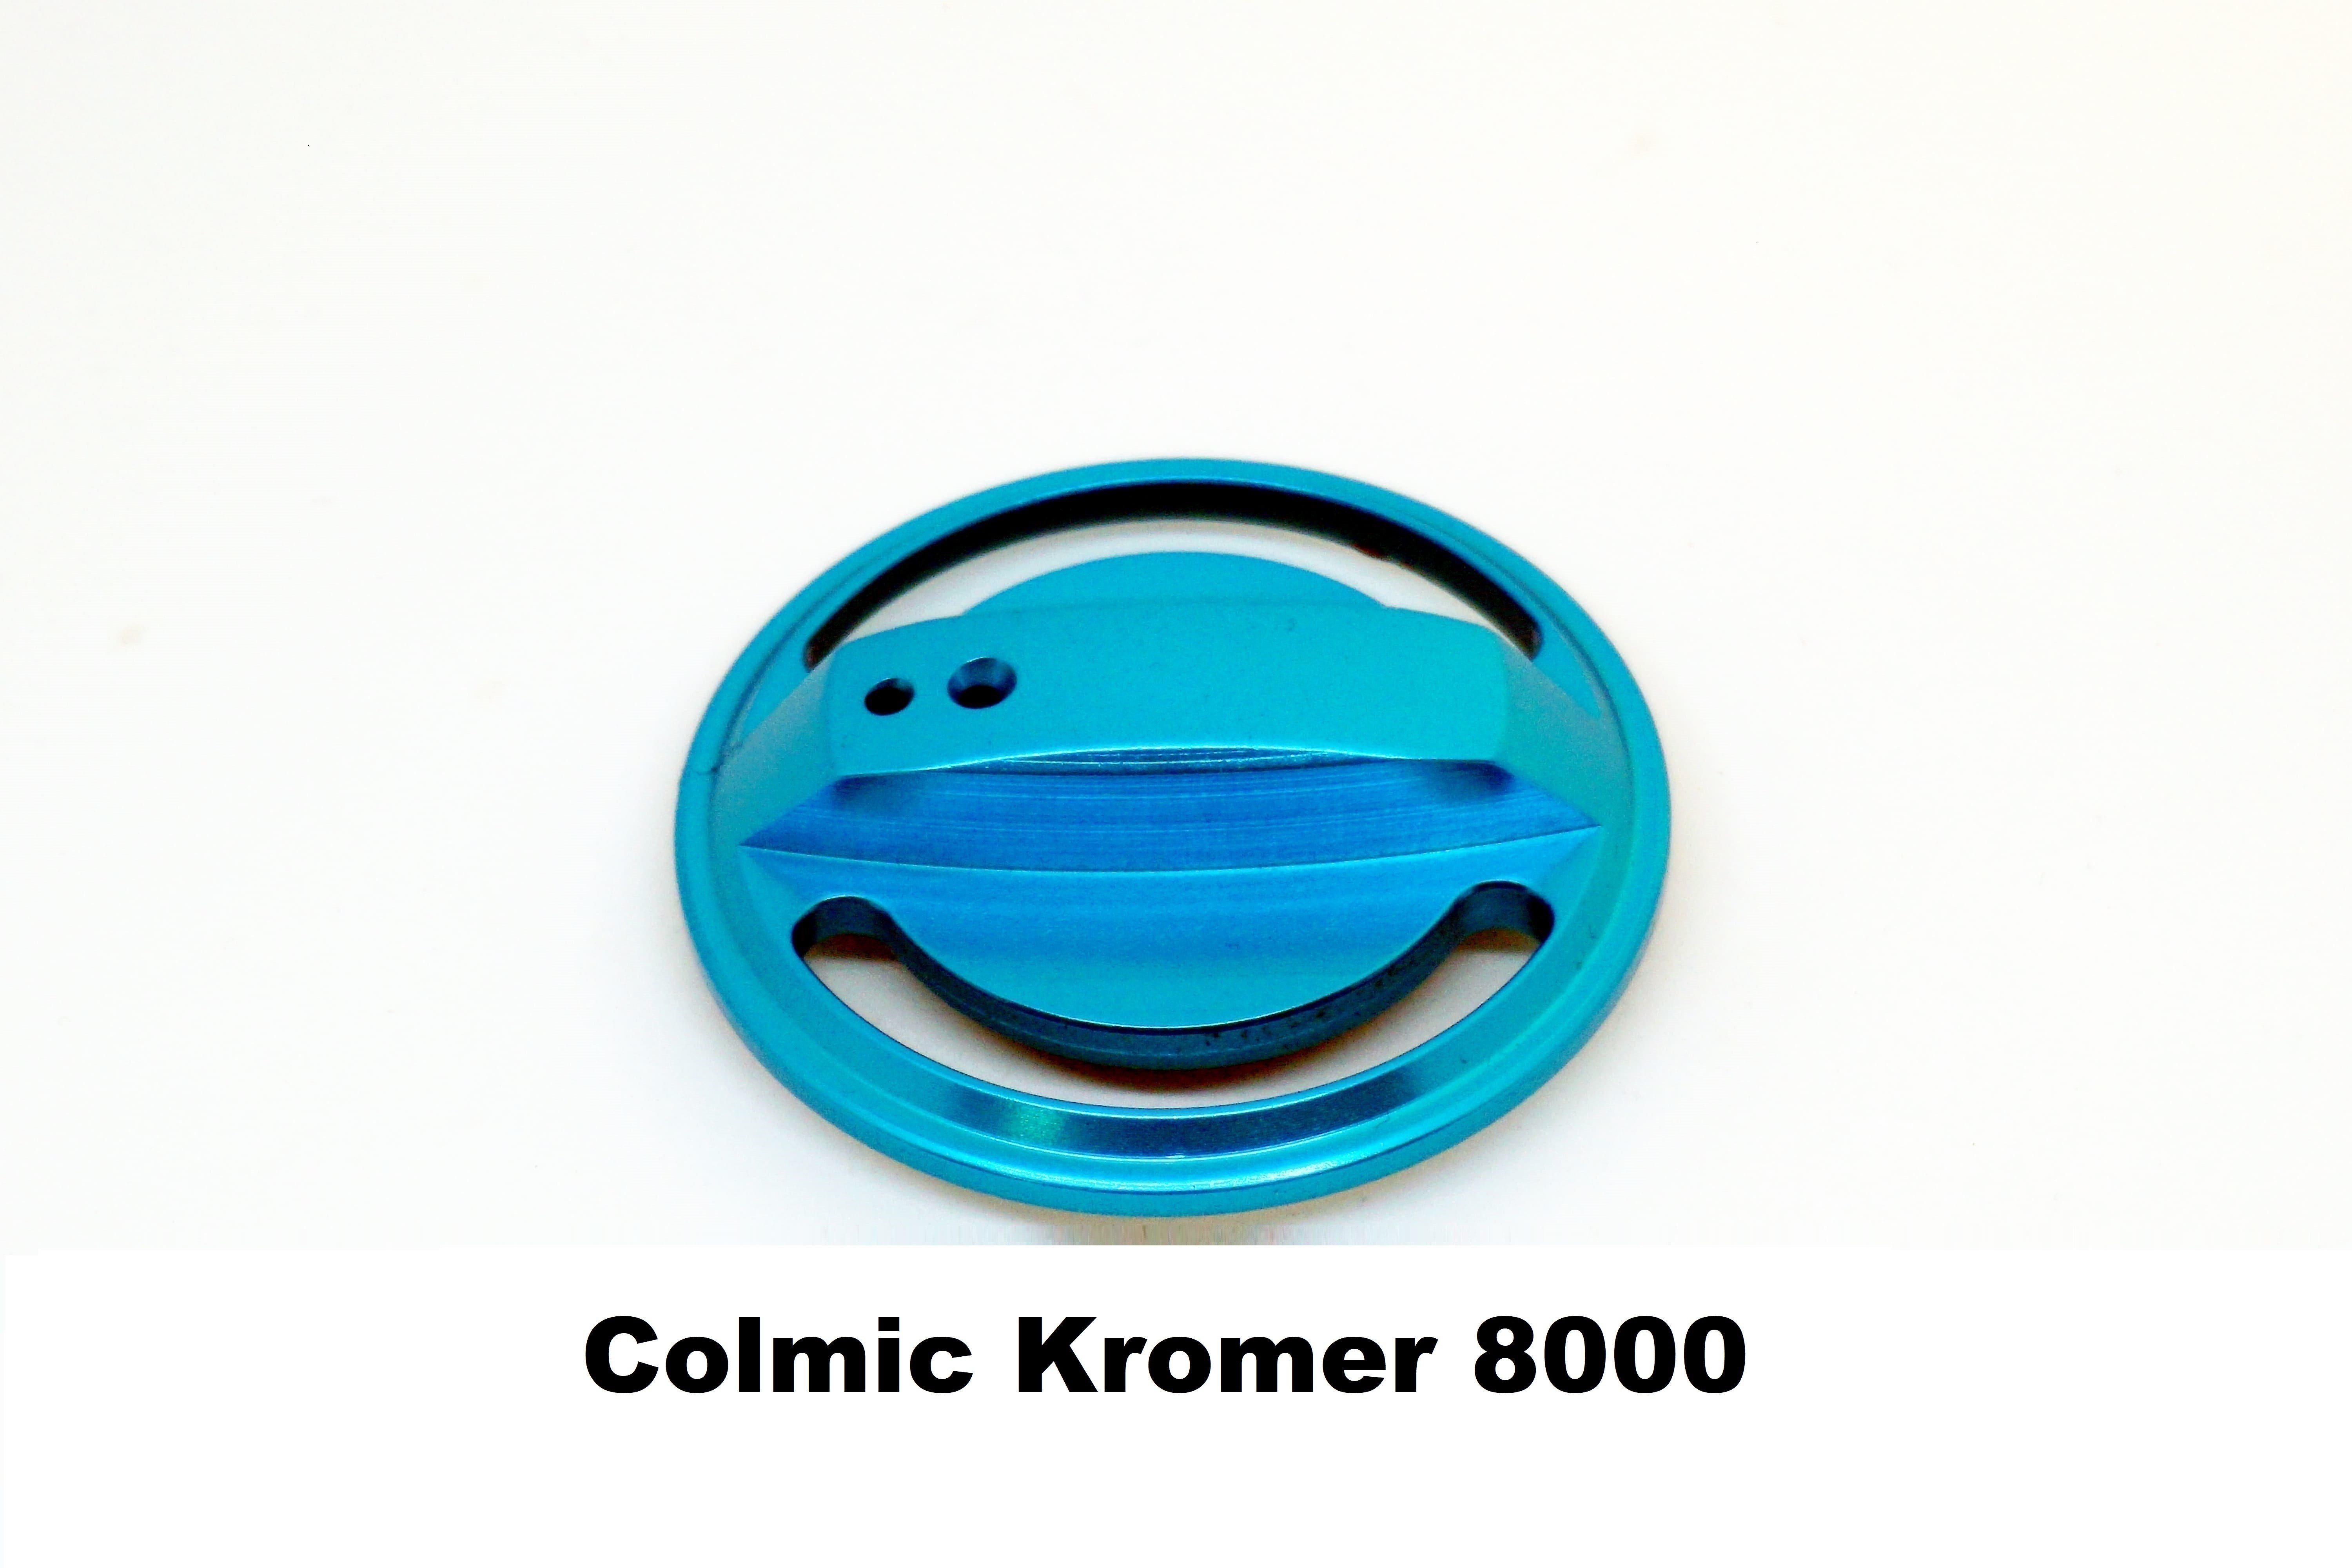 Bremsenknopf für Brandungsrolle Colmic Kromer 8000